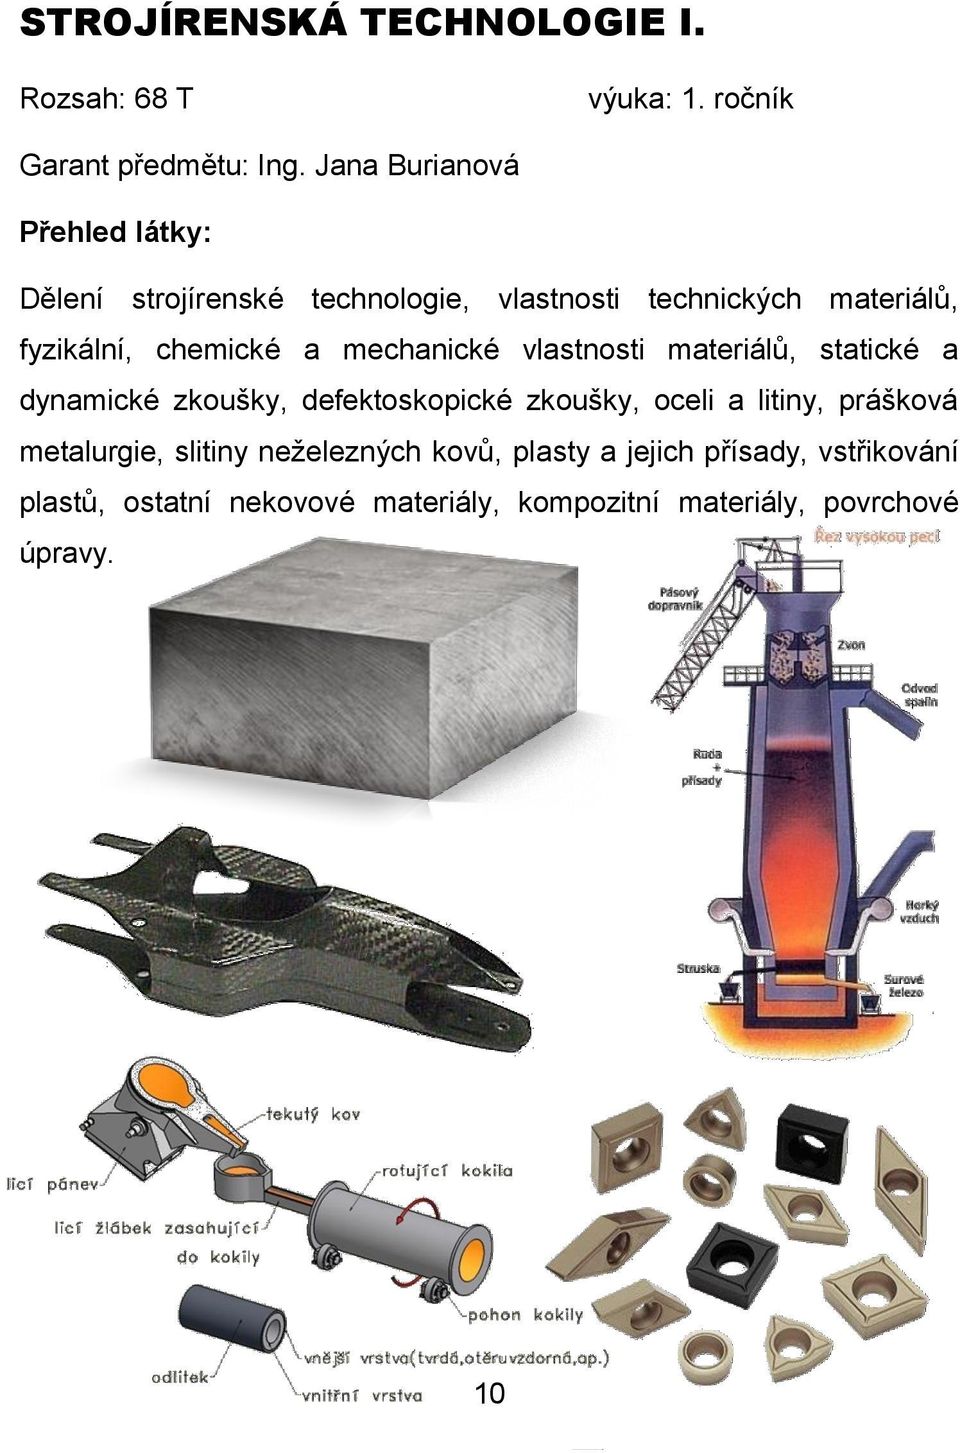 mechanické vlastnosti materiálů, statické a dynamické zkoušky, defektoskopické zkoušky, oceli a litiny, prášková